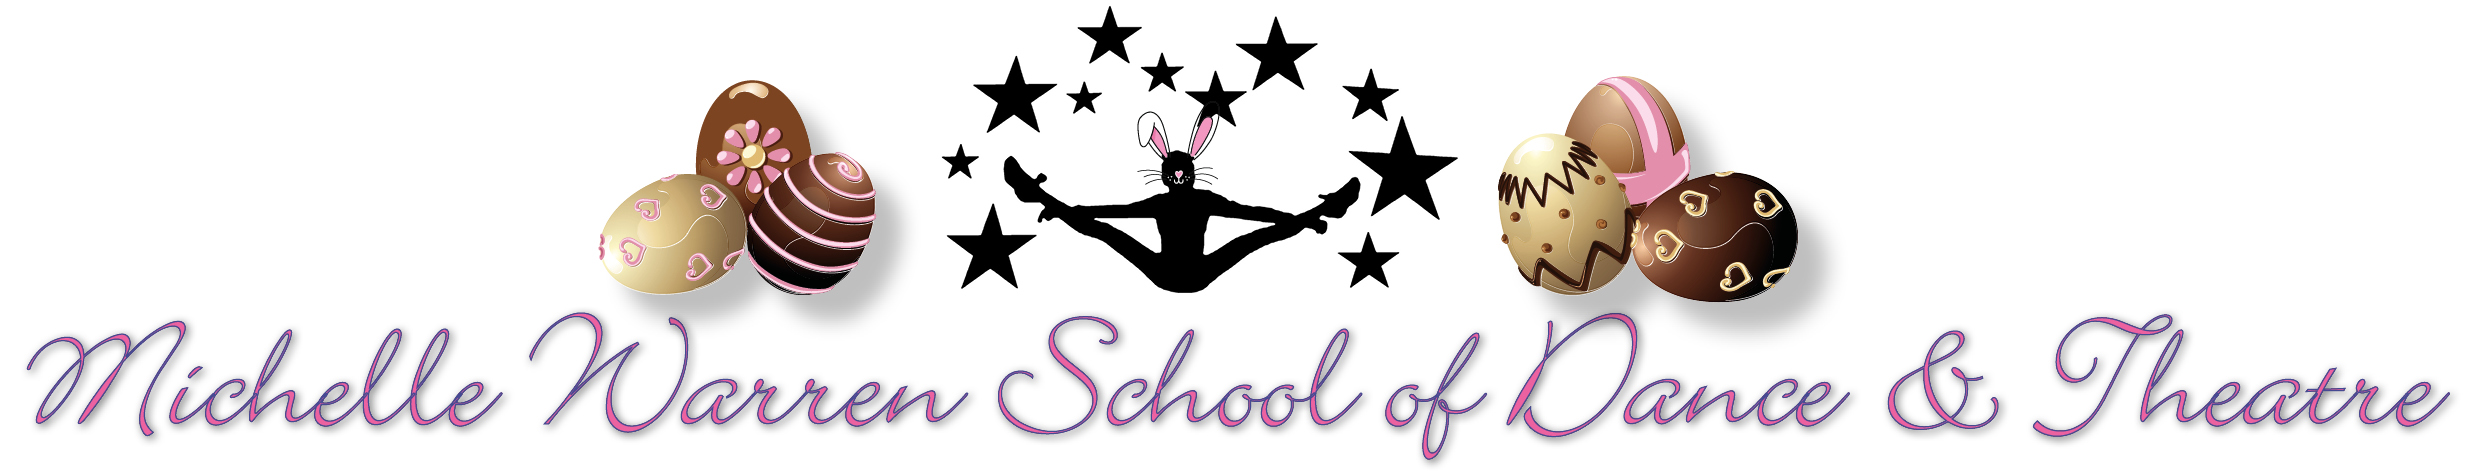 Michelle Warren School of Dance & Theatre